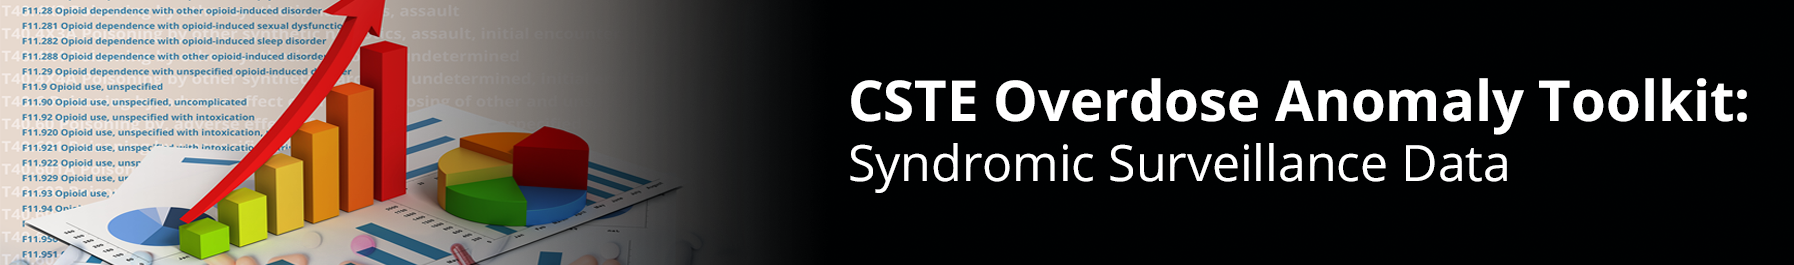 CSTE Overdose Anomaly Toolkit: Syndromic Surveillance Data